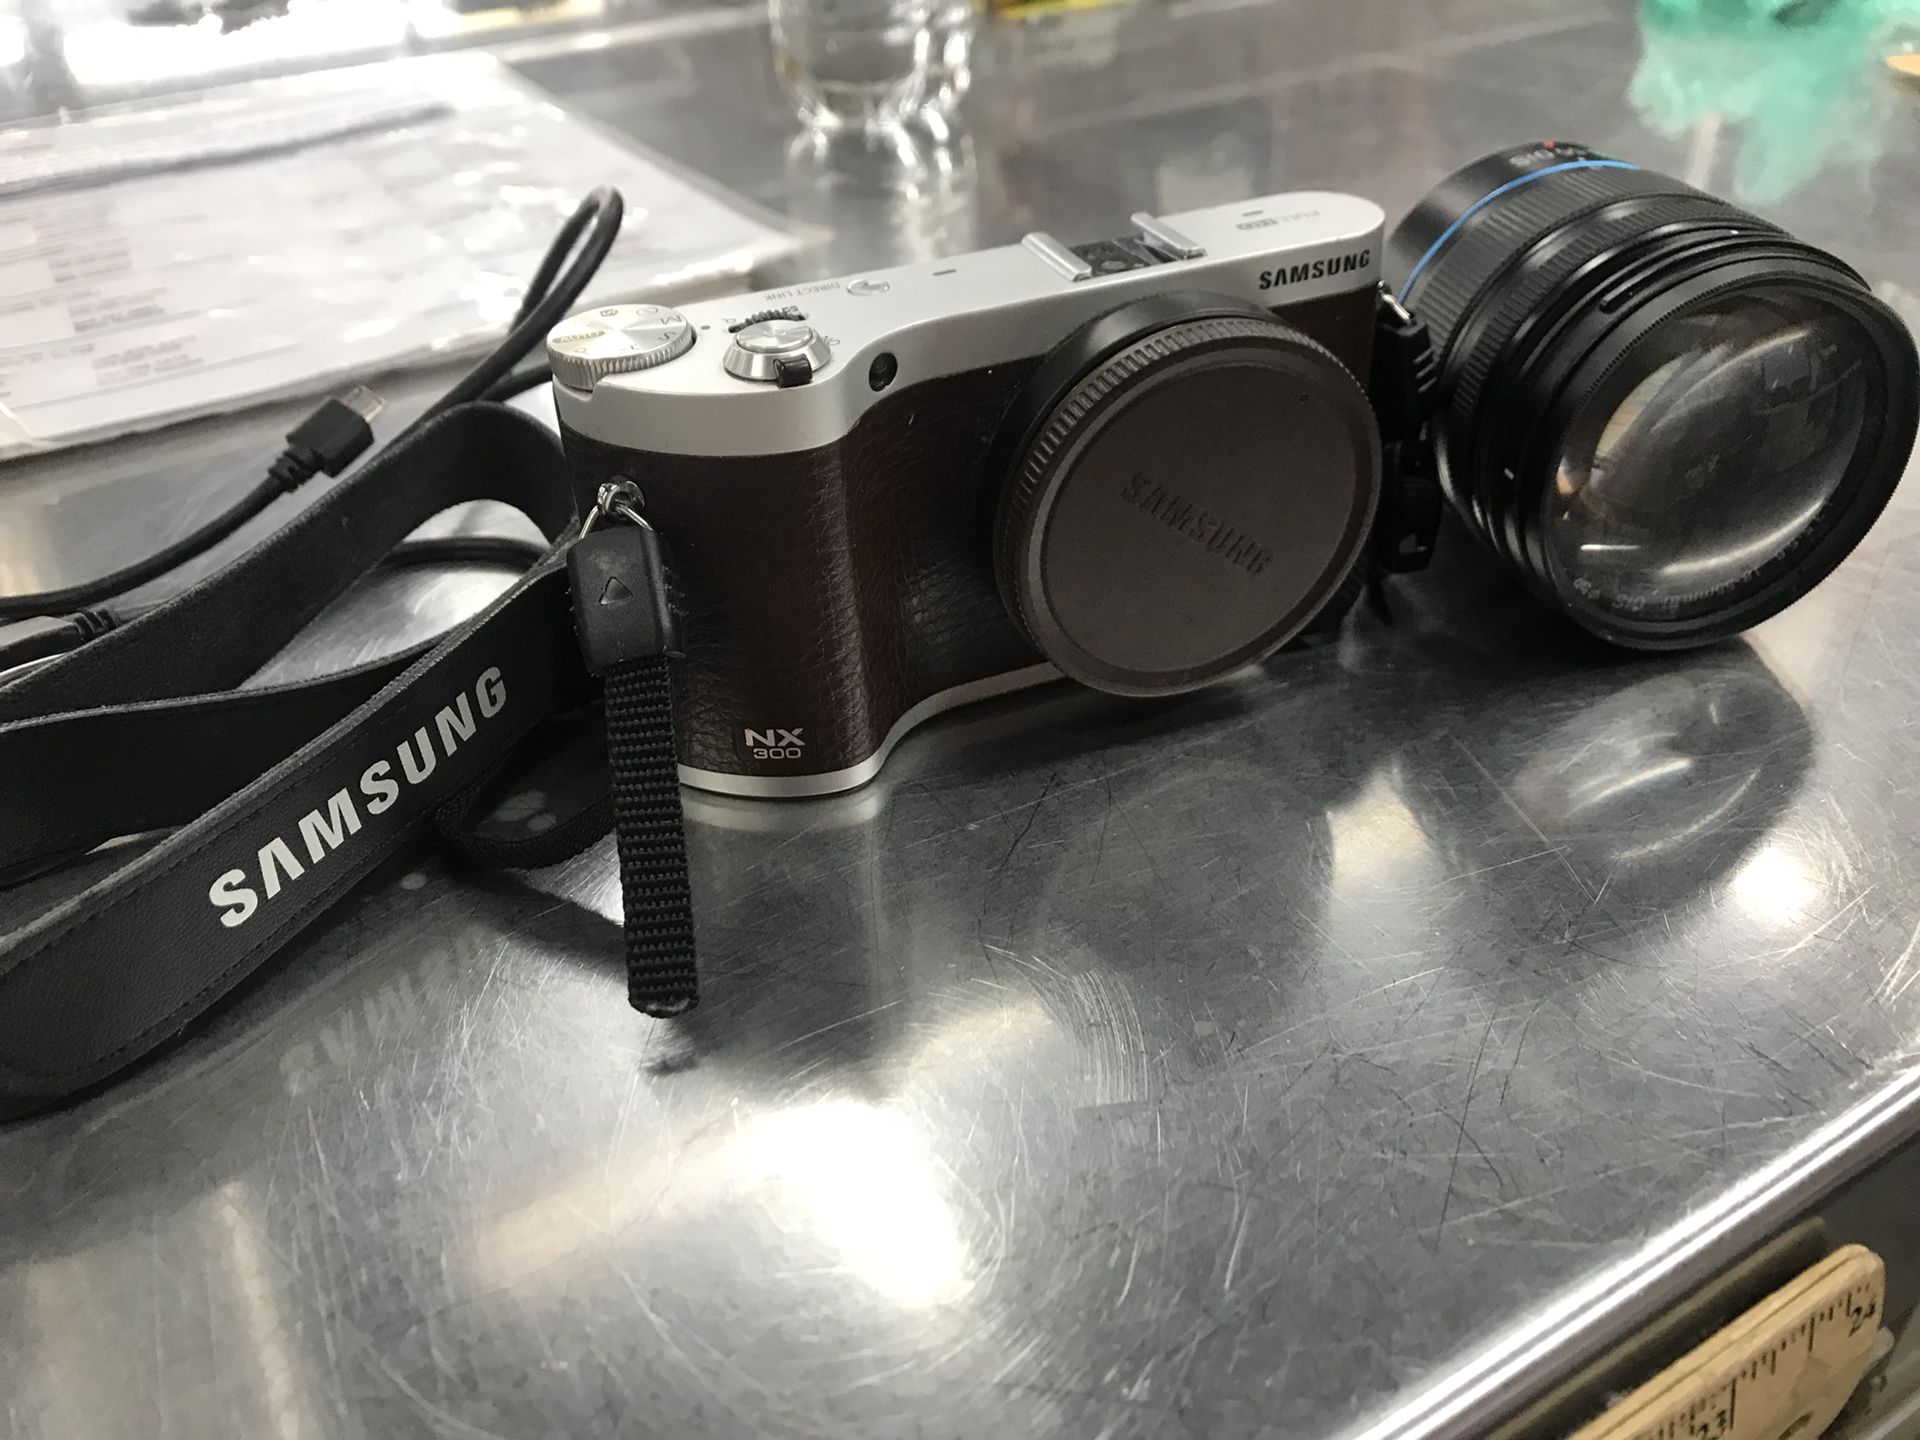 Samsung Digital Camera and lens